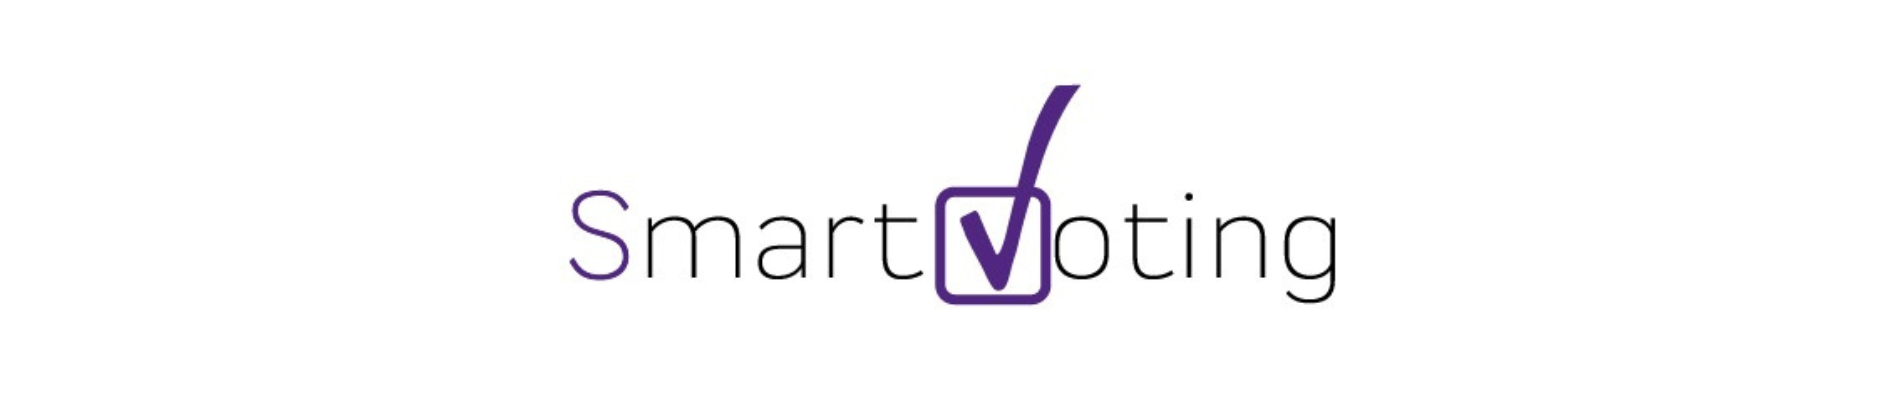 Smartvoting - Votaciones Electrónicas